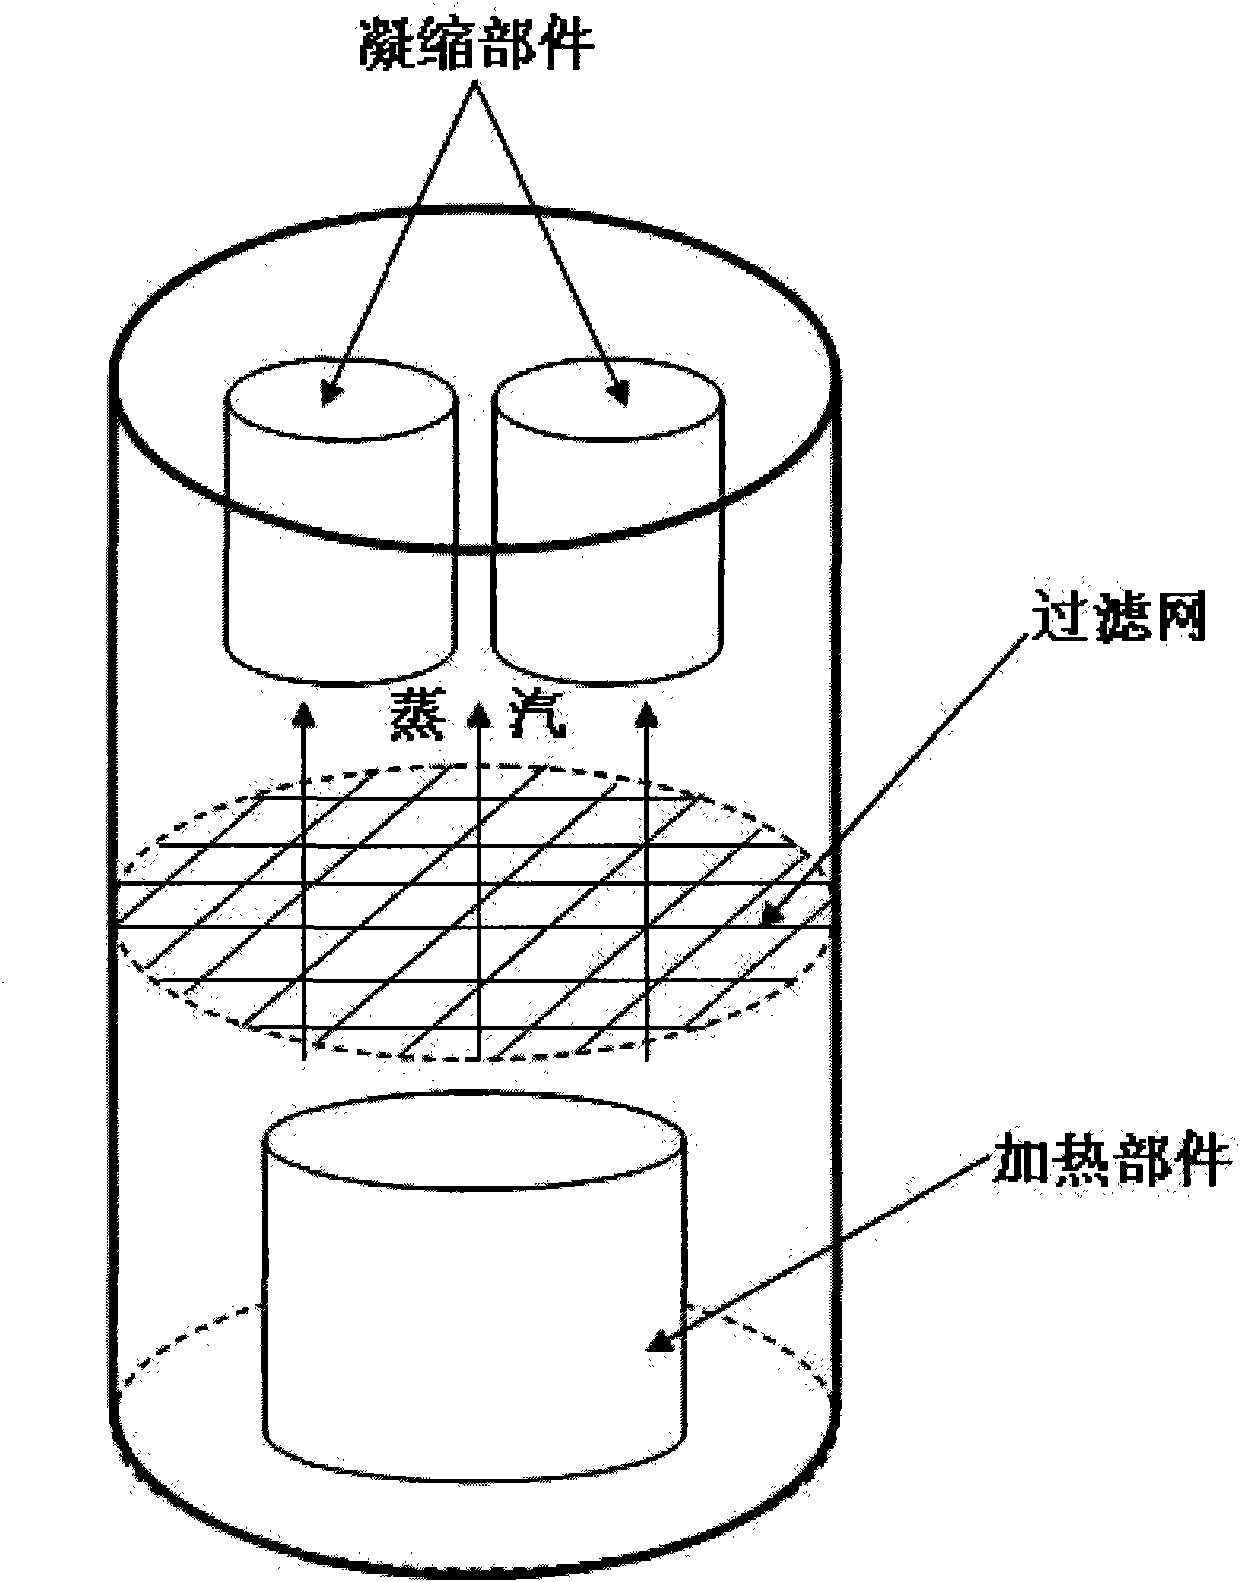 Vacuum distillation method for magnesium alloy